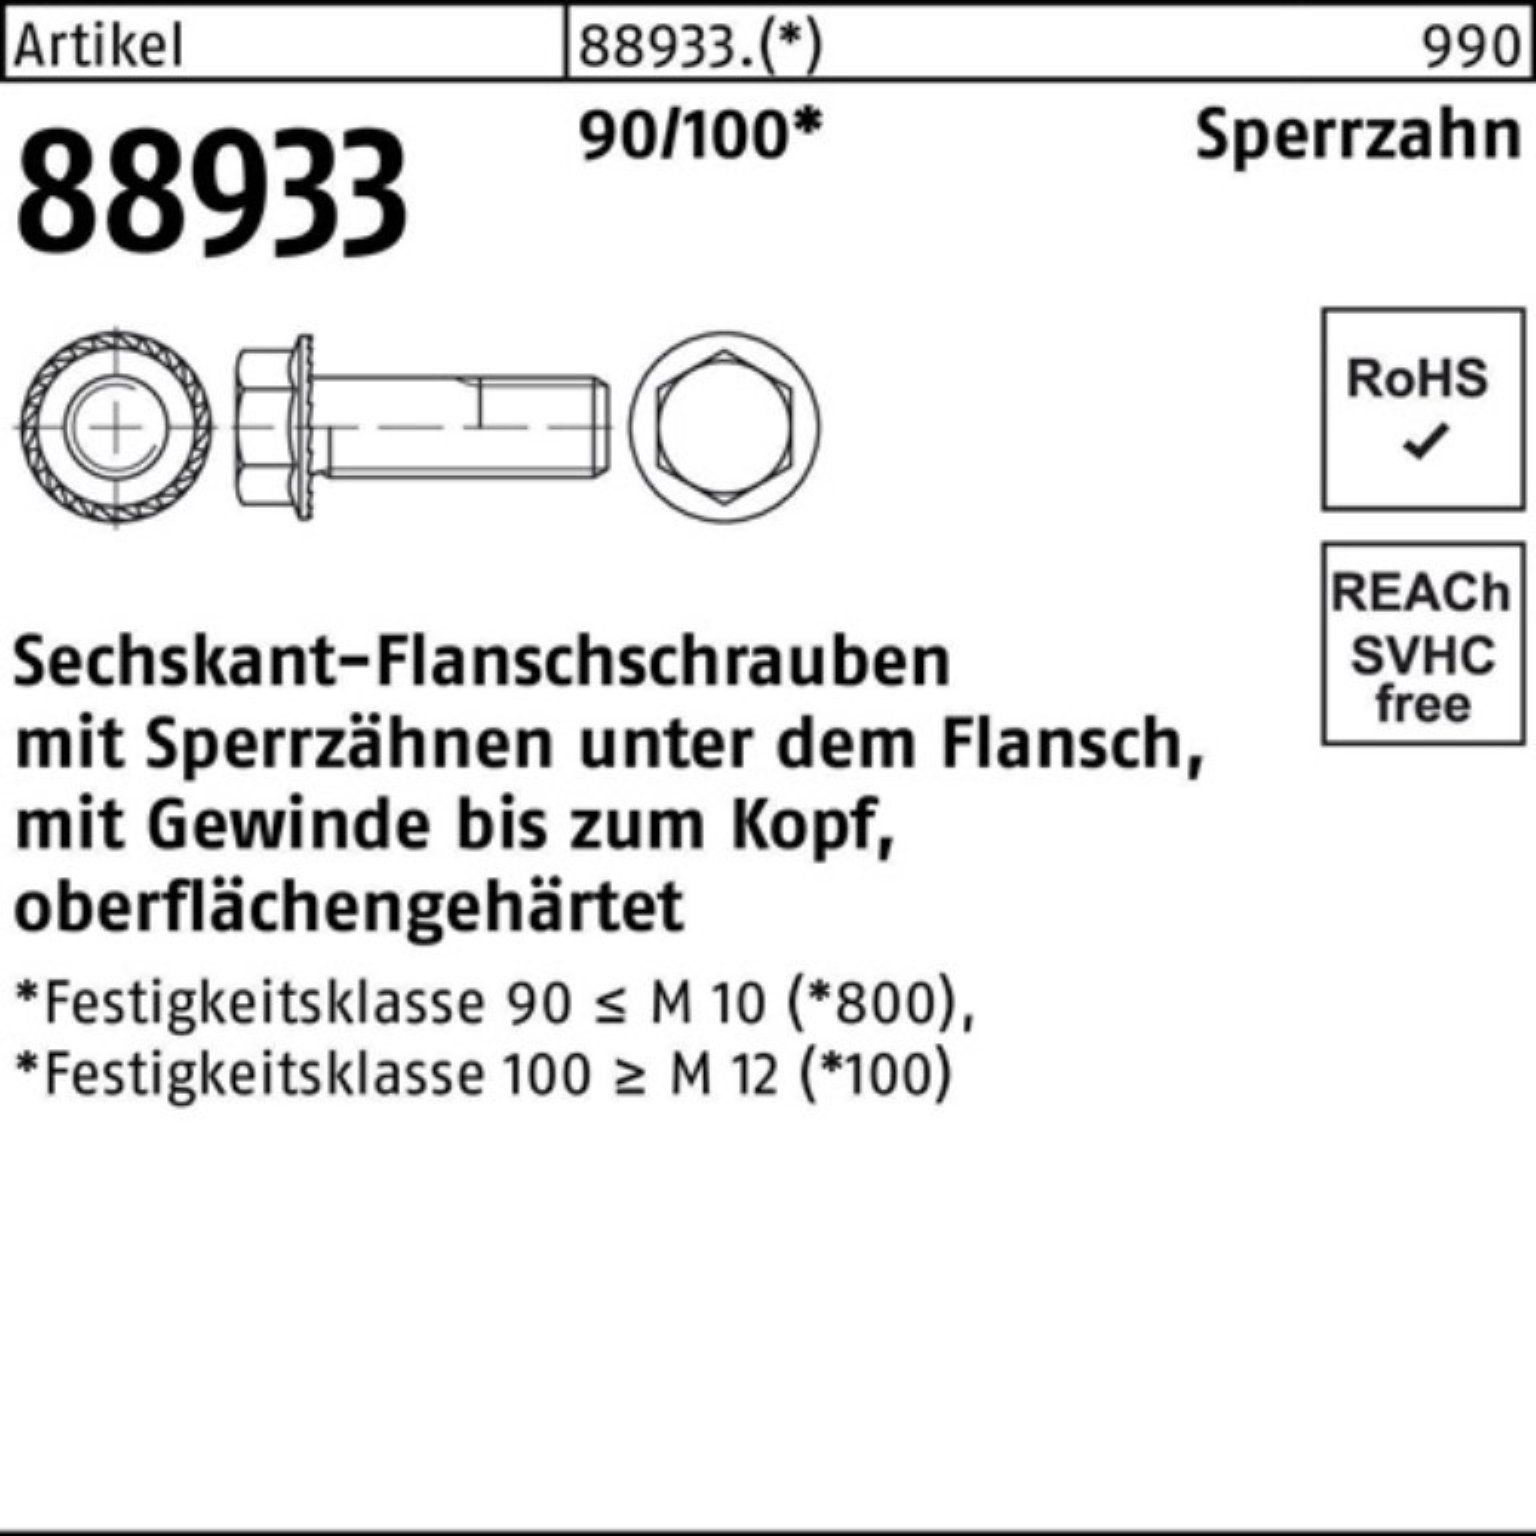 Sperrz. VG Reyher 90/100 M10x Sechskantflanschschraube 88933 30 Pack 200er R Schraube